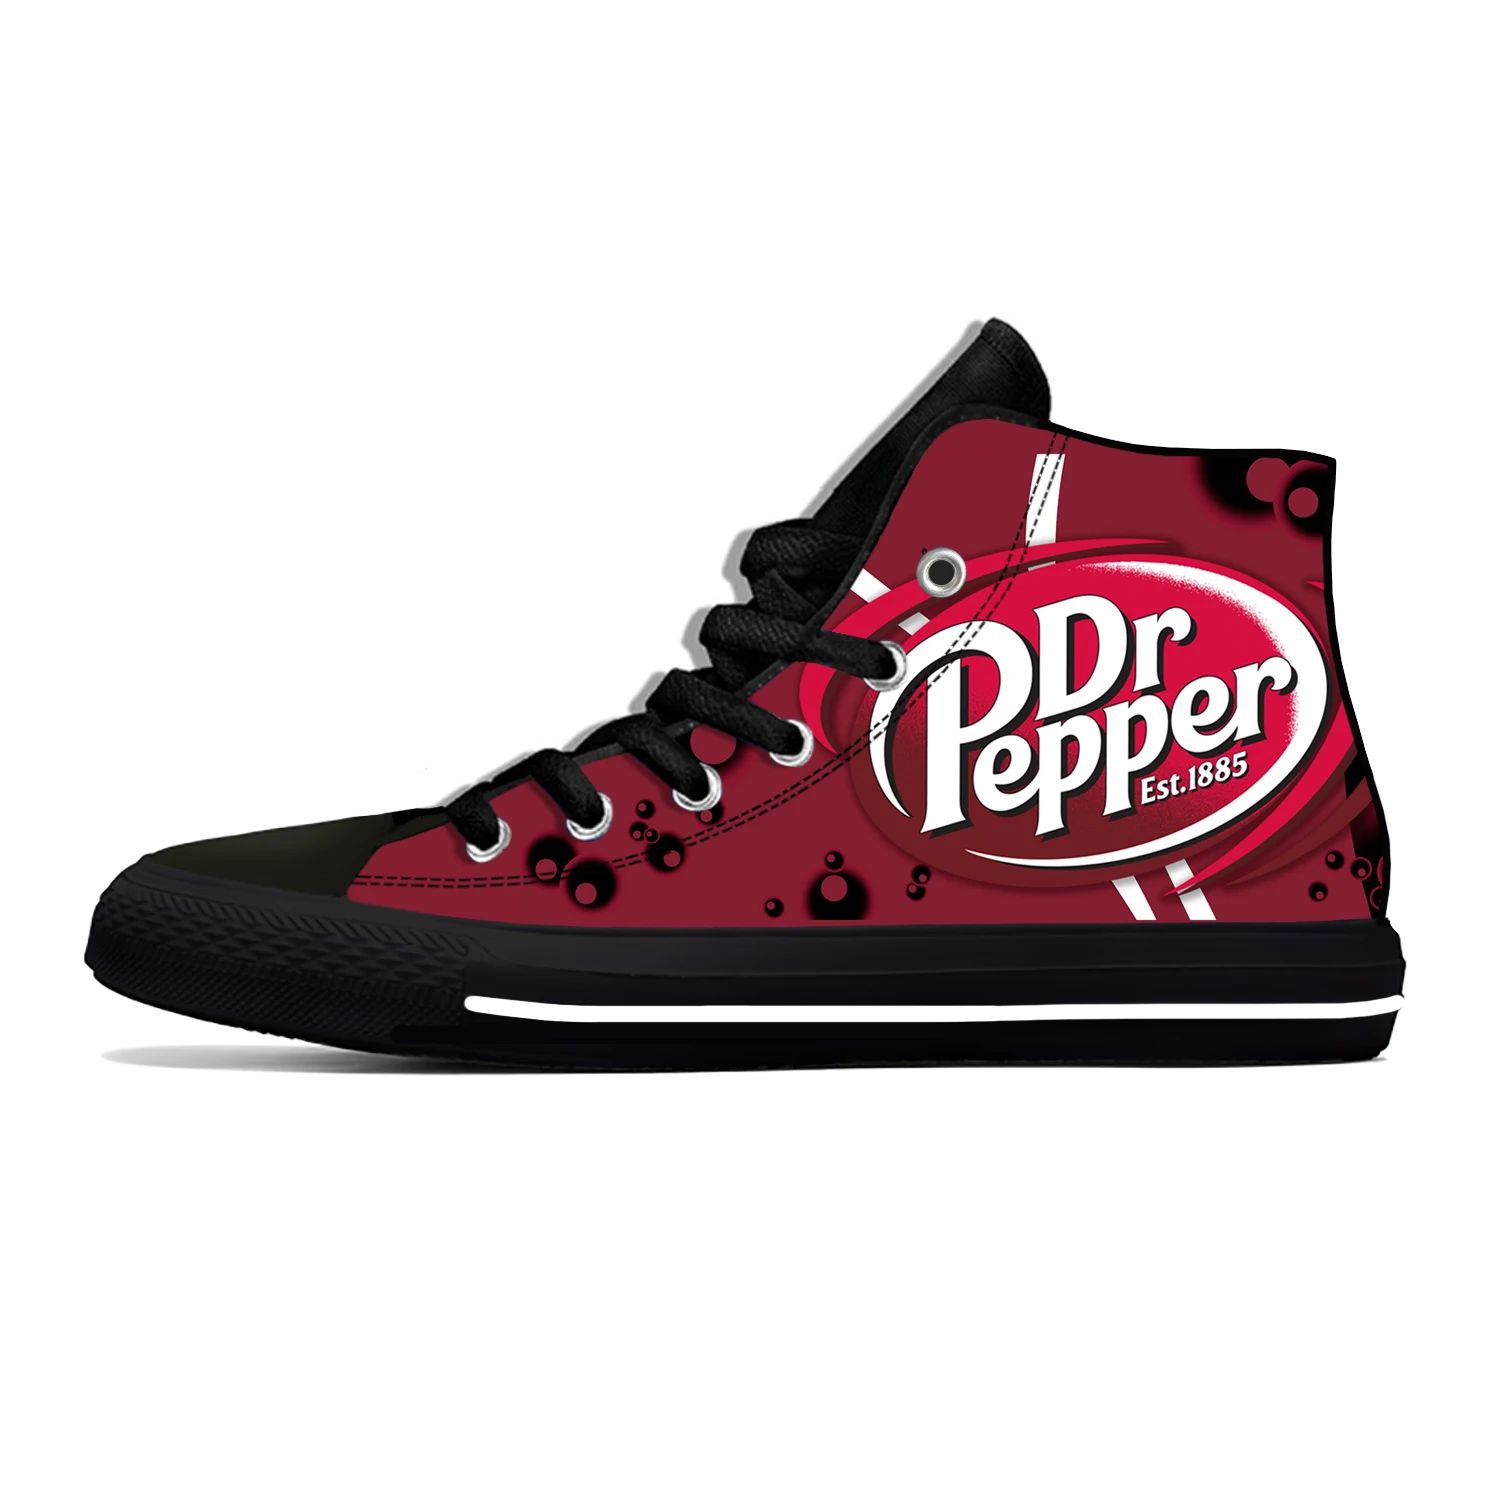 Color:DR Pepper AShoe Size:6.5